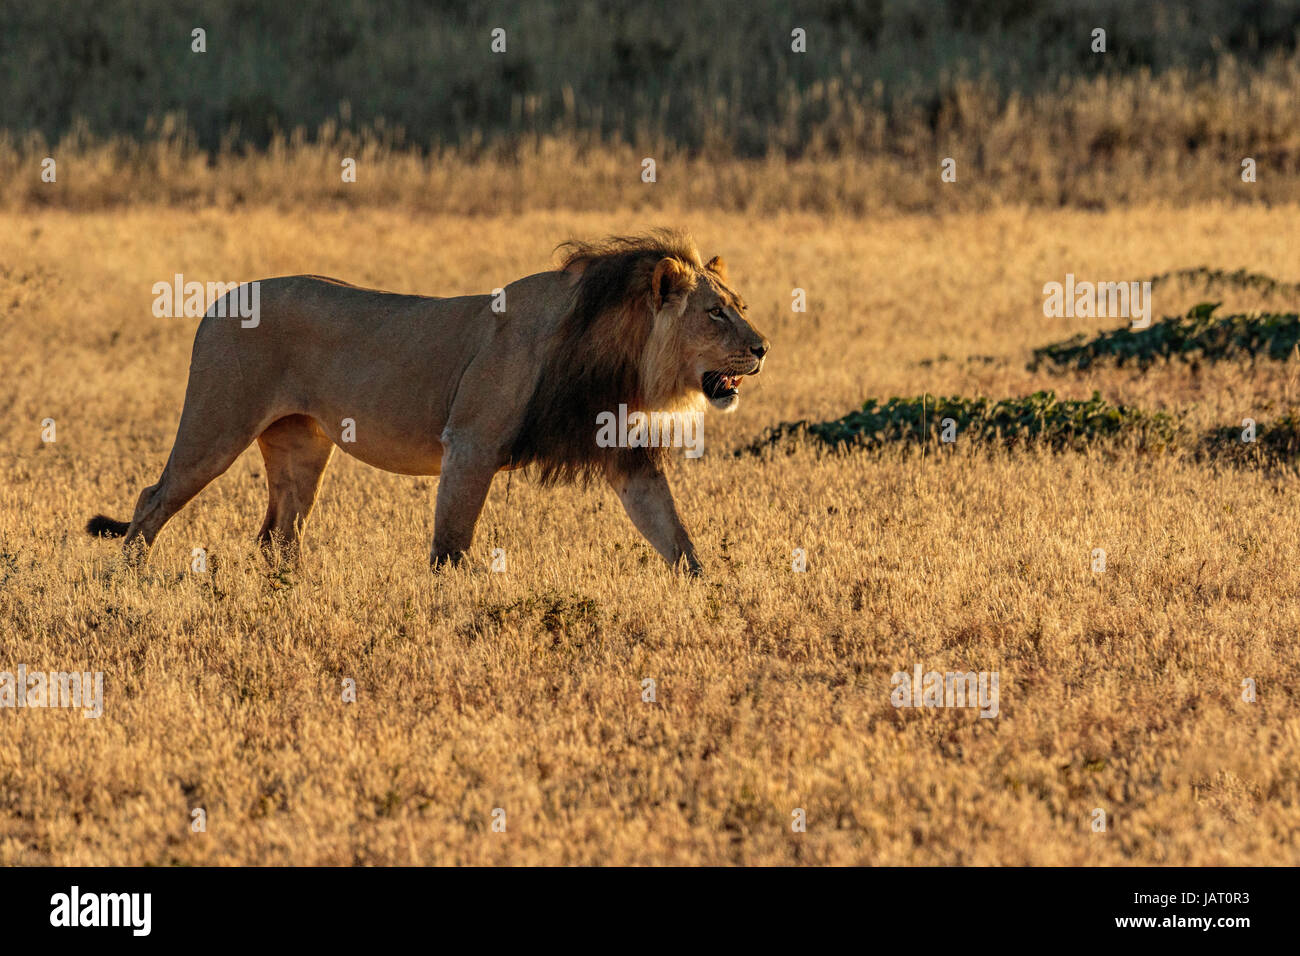 Grande crinière noire male lion (Panthera leo) du Kalahari, rétro-éclairé à pied tôt le matin, la lumière du soleil d'or Banque D'Images